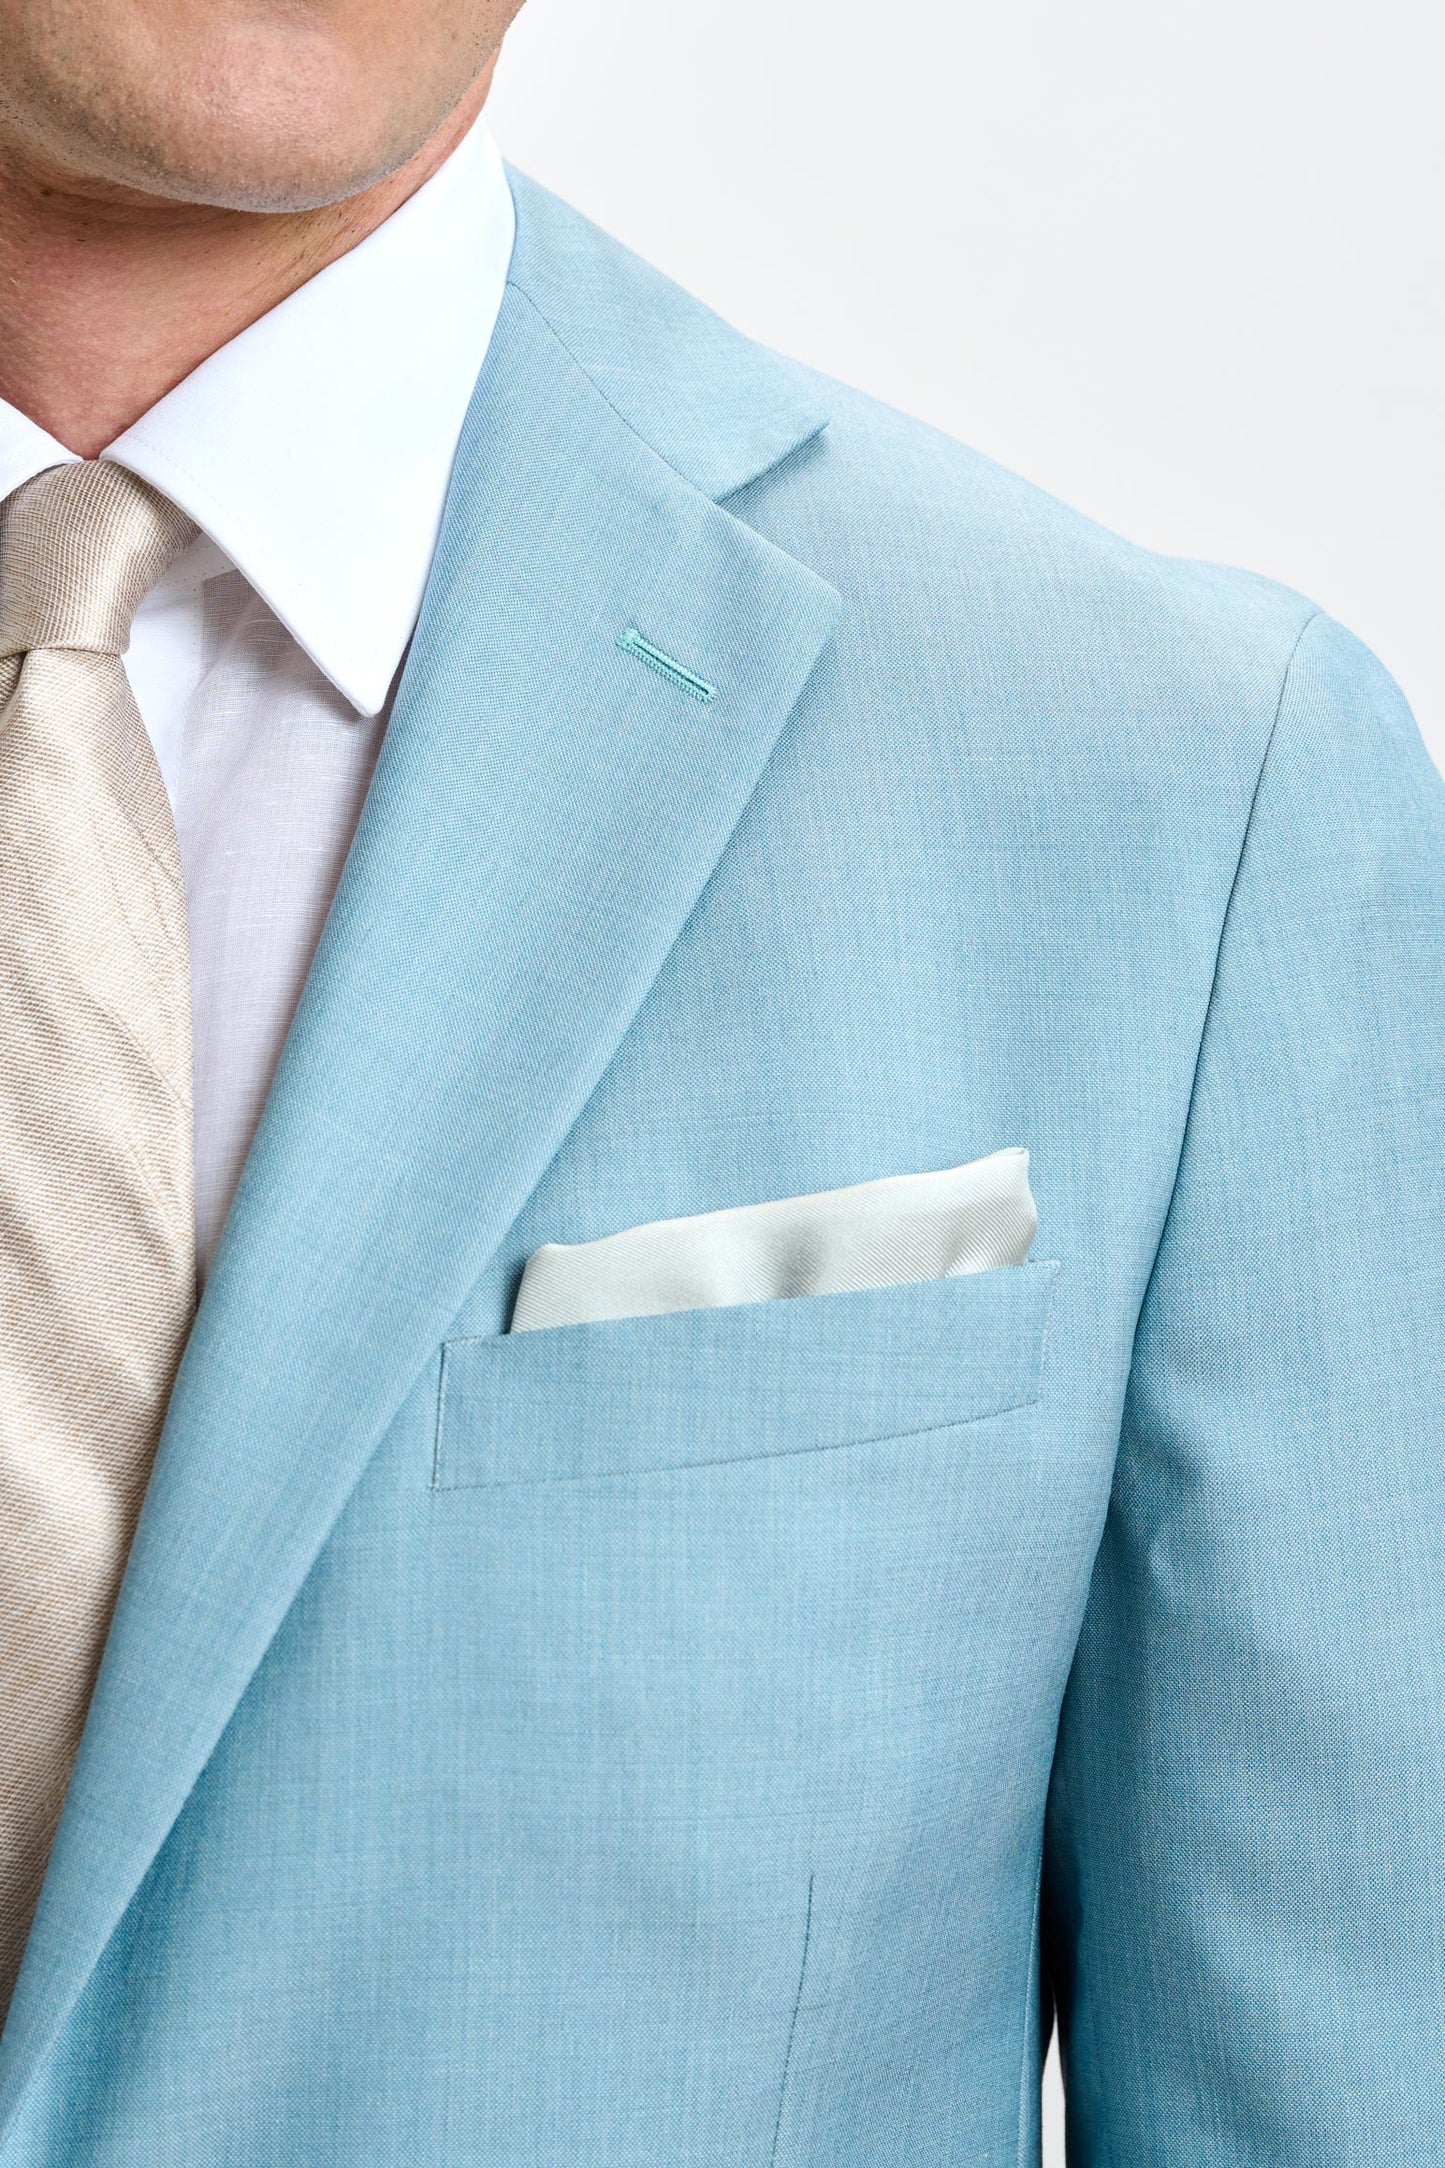 Kenton Suit Sleek Mint Plain